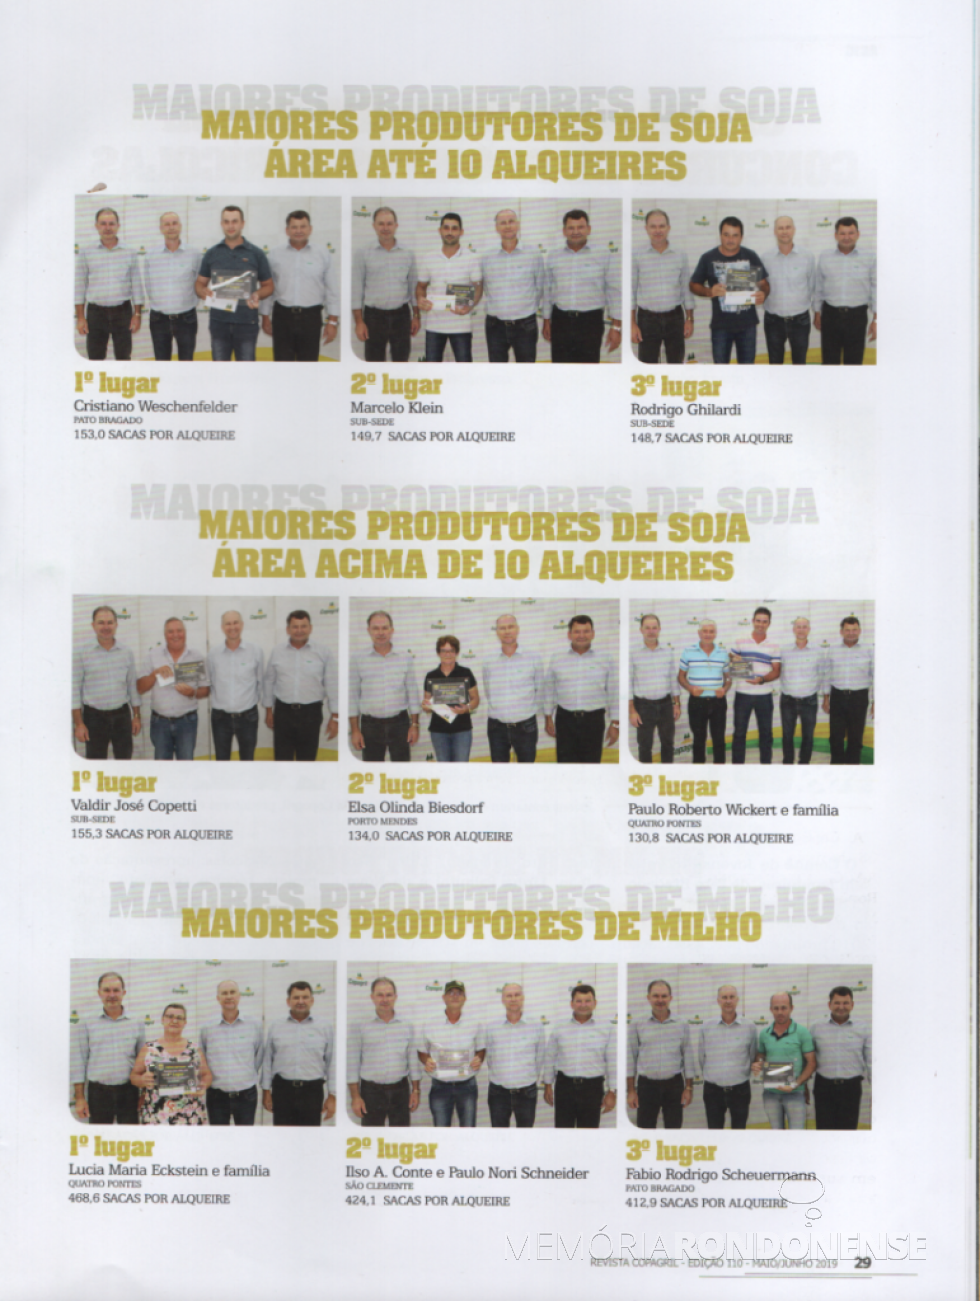 Premiação dos produtores que alcançaram a melhor produtividade de soja e milho, respectivamente, nas categorias envolvidas, na safra 2018/2019.
ImageM; Revista Copagril nº 110 - FOTO 24 -